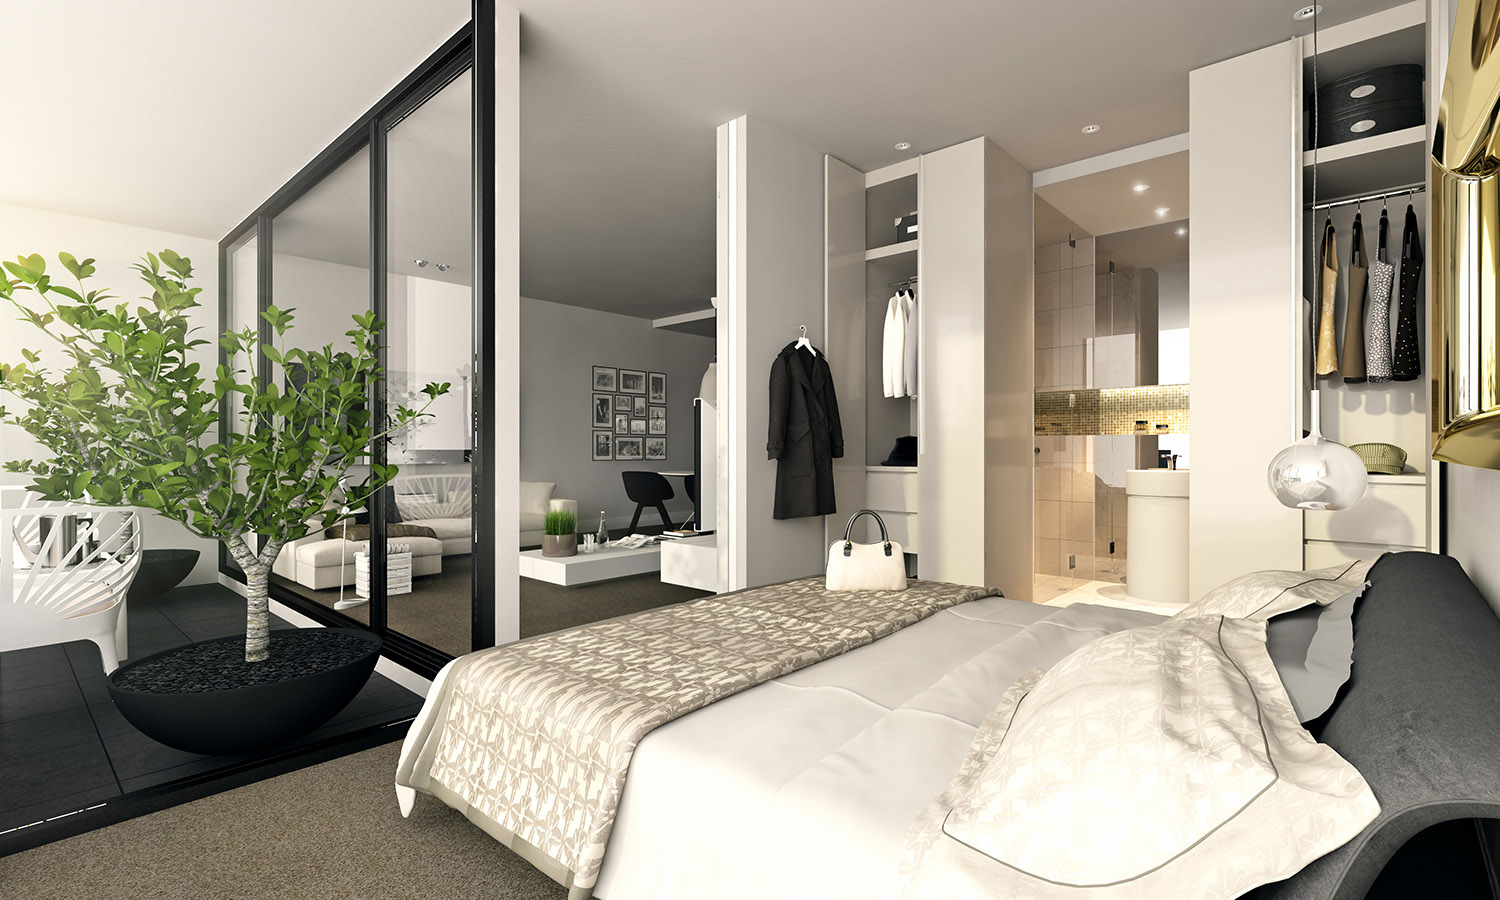 Studio Apartment Interiors Inspiration Architecture & Design